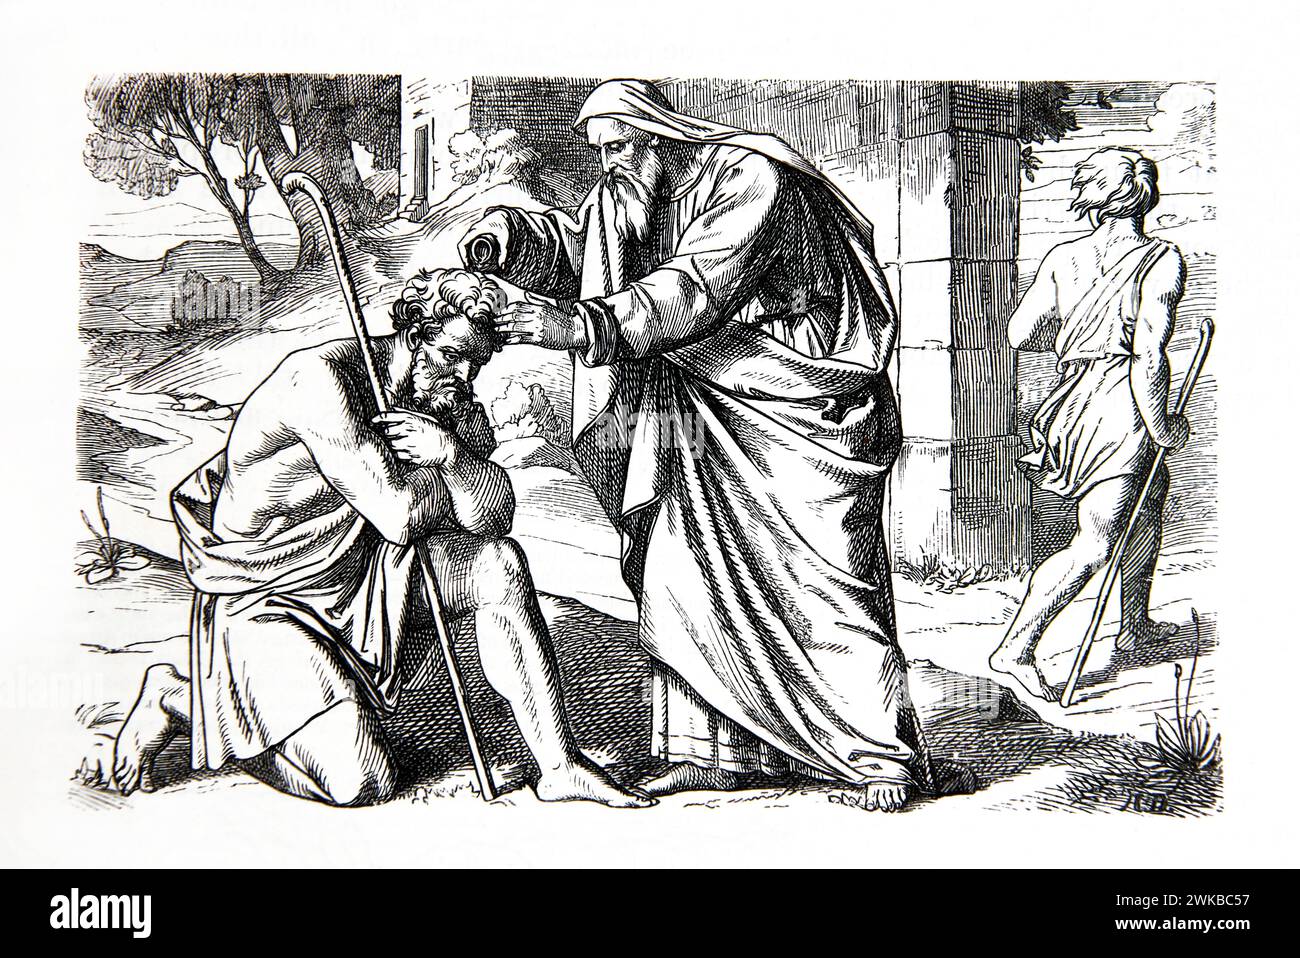 Samuel Annointing le futur roi Saul avec une fiole d'huile (Samuel) de l'ancienne Bible de famille illustrée du XIXe siècle Banque D'Images